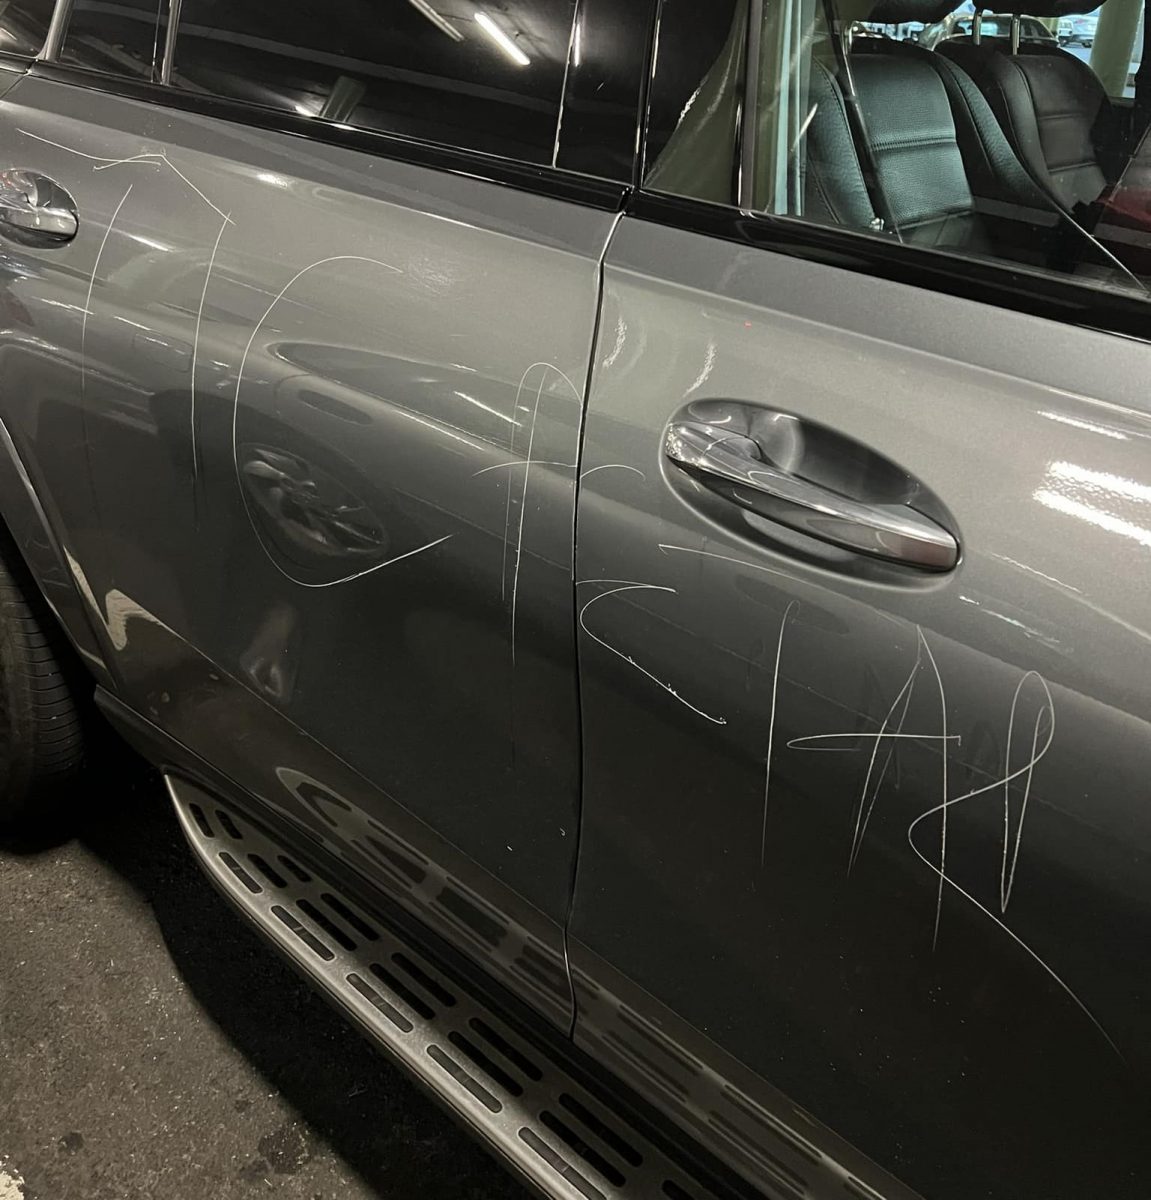 Car vandalism